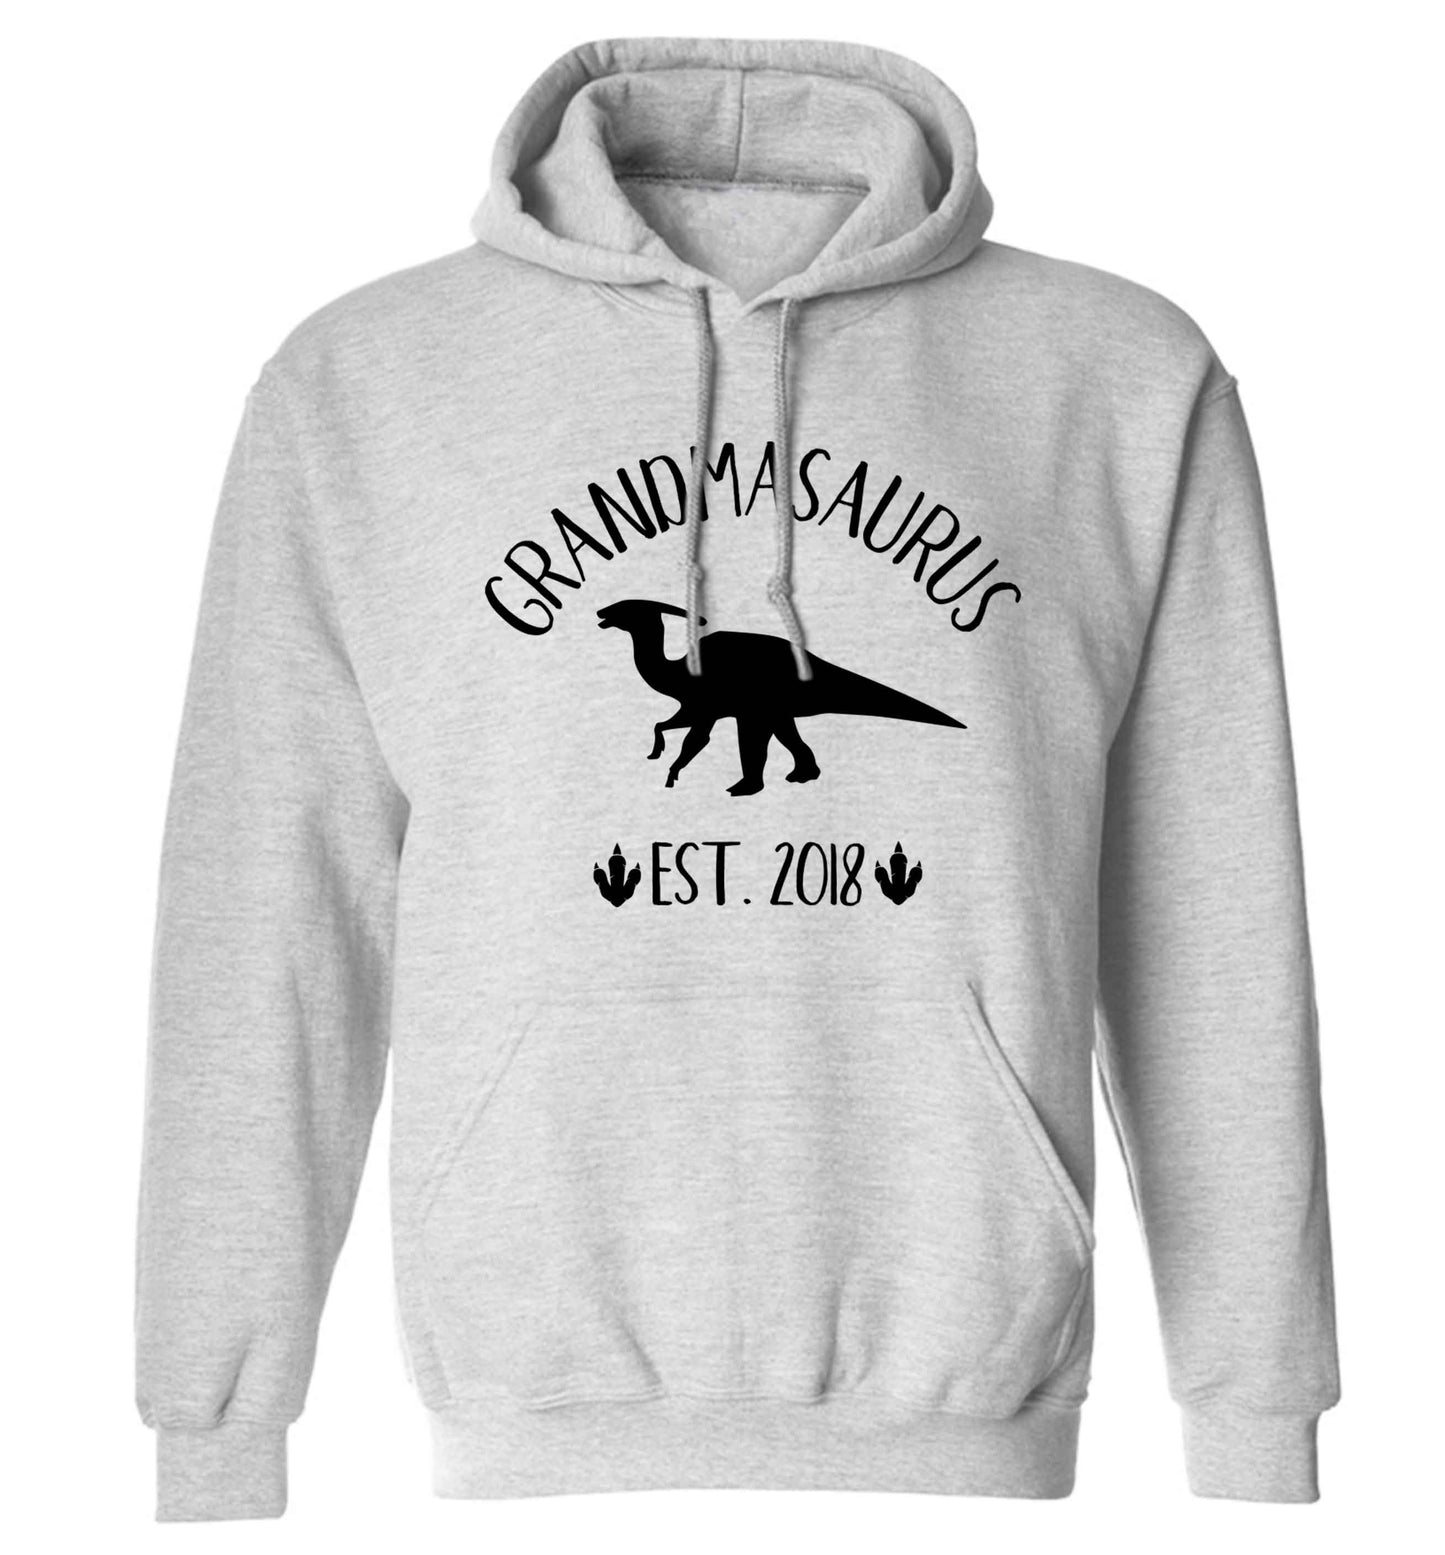 Personalised grandmasaurus since (custom date) adults unisex grey hoodie 2XL